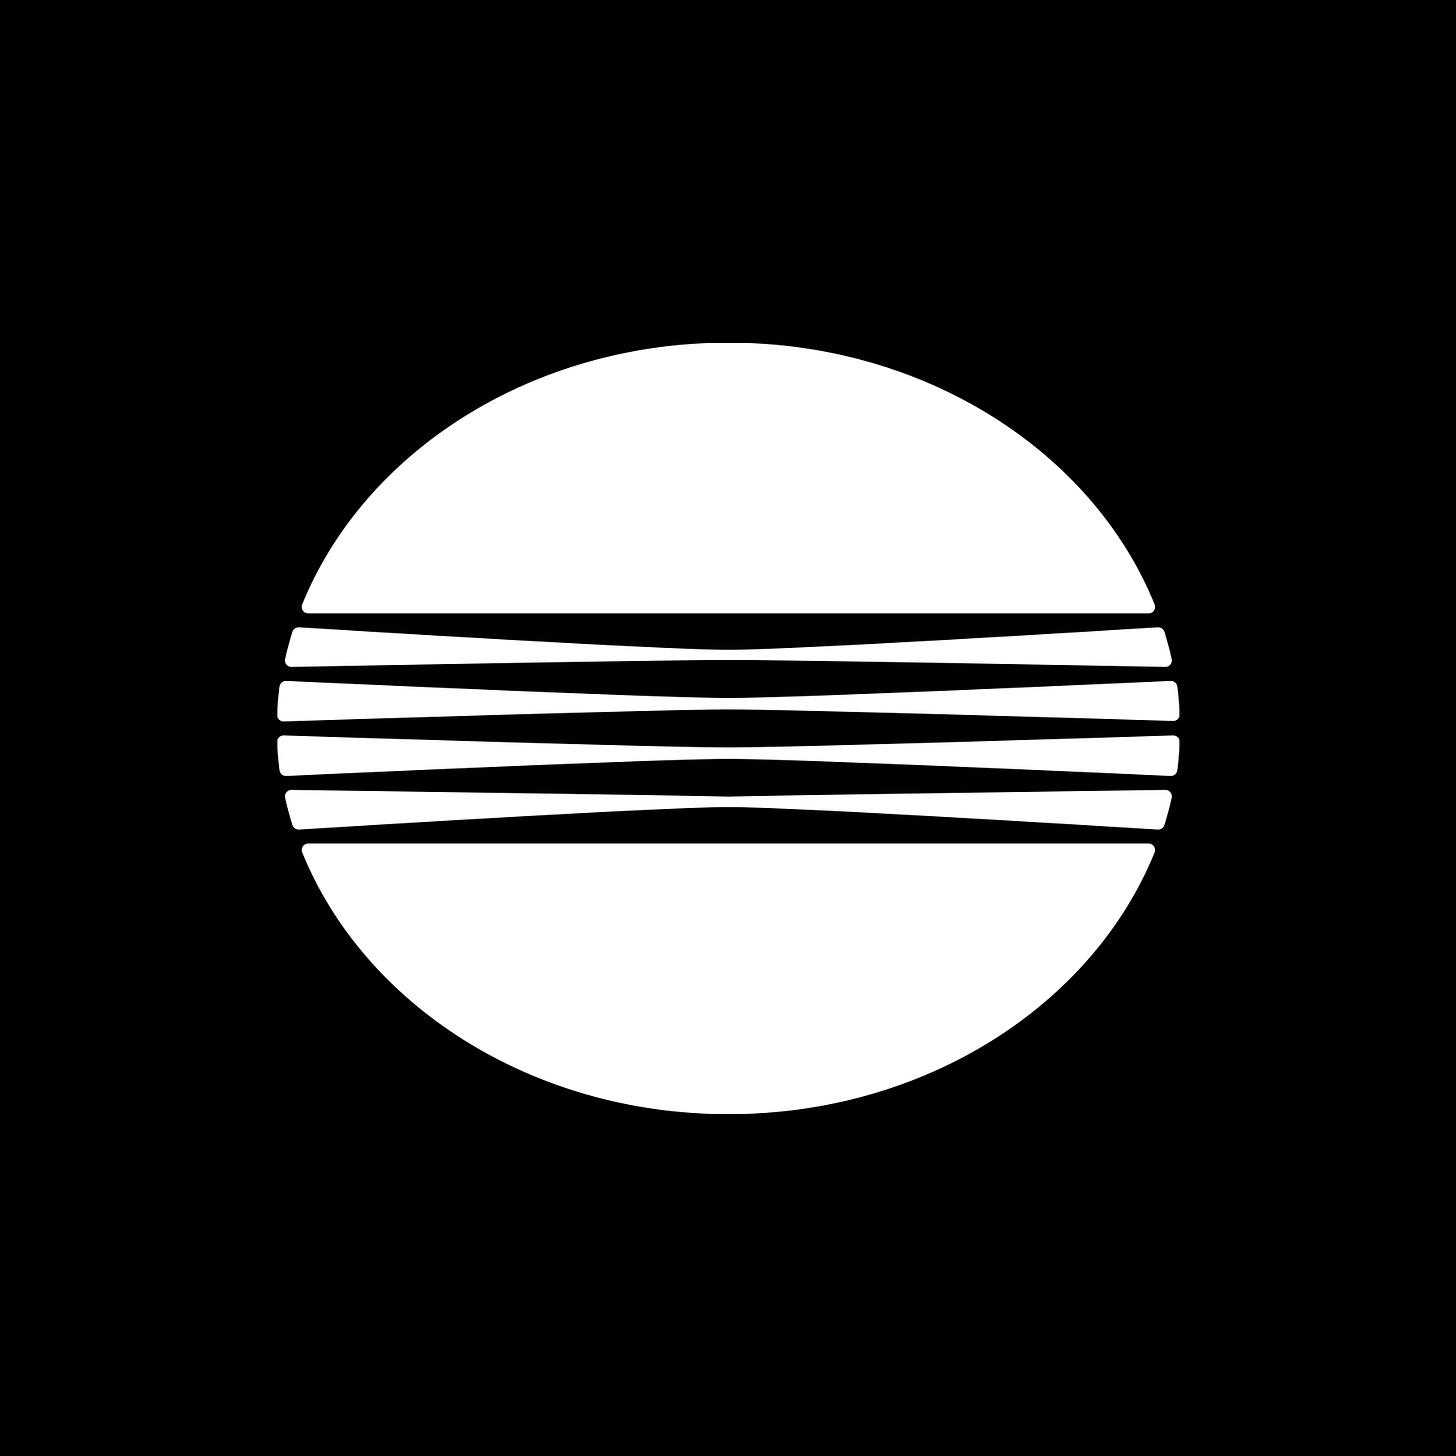 Minolta logo by Saul Bass, 1980